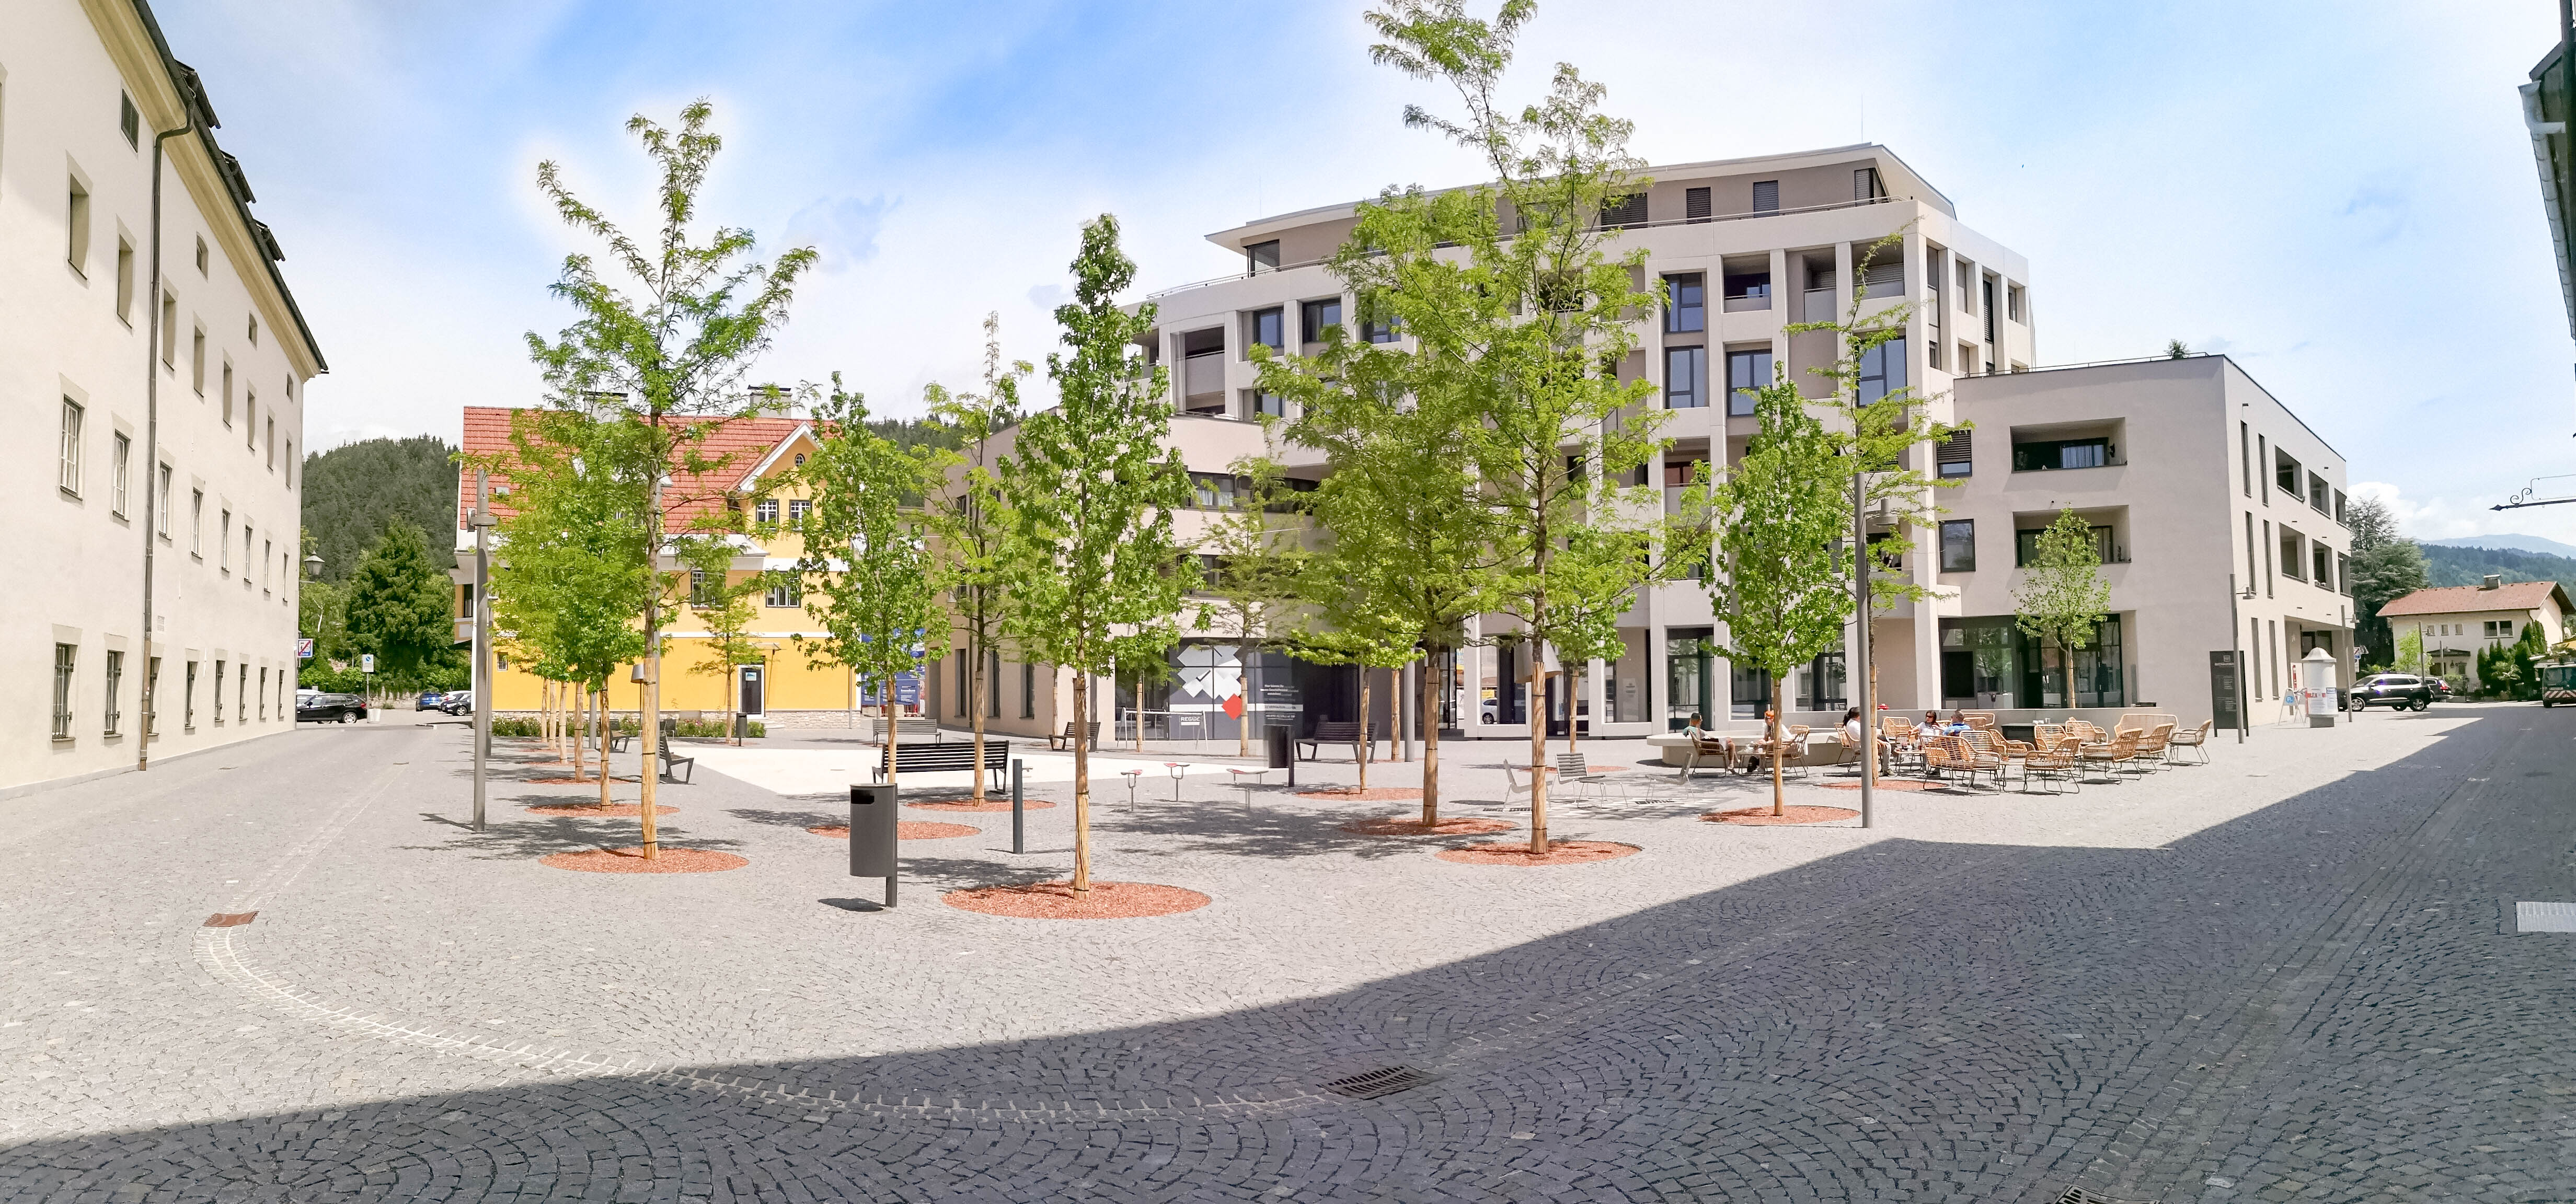 Projekt Neuer Rathausmarkt Spittal - Baustufe I